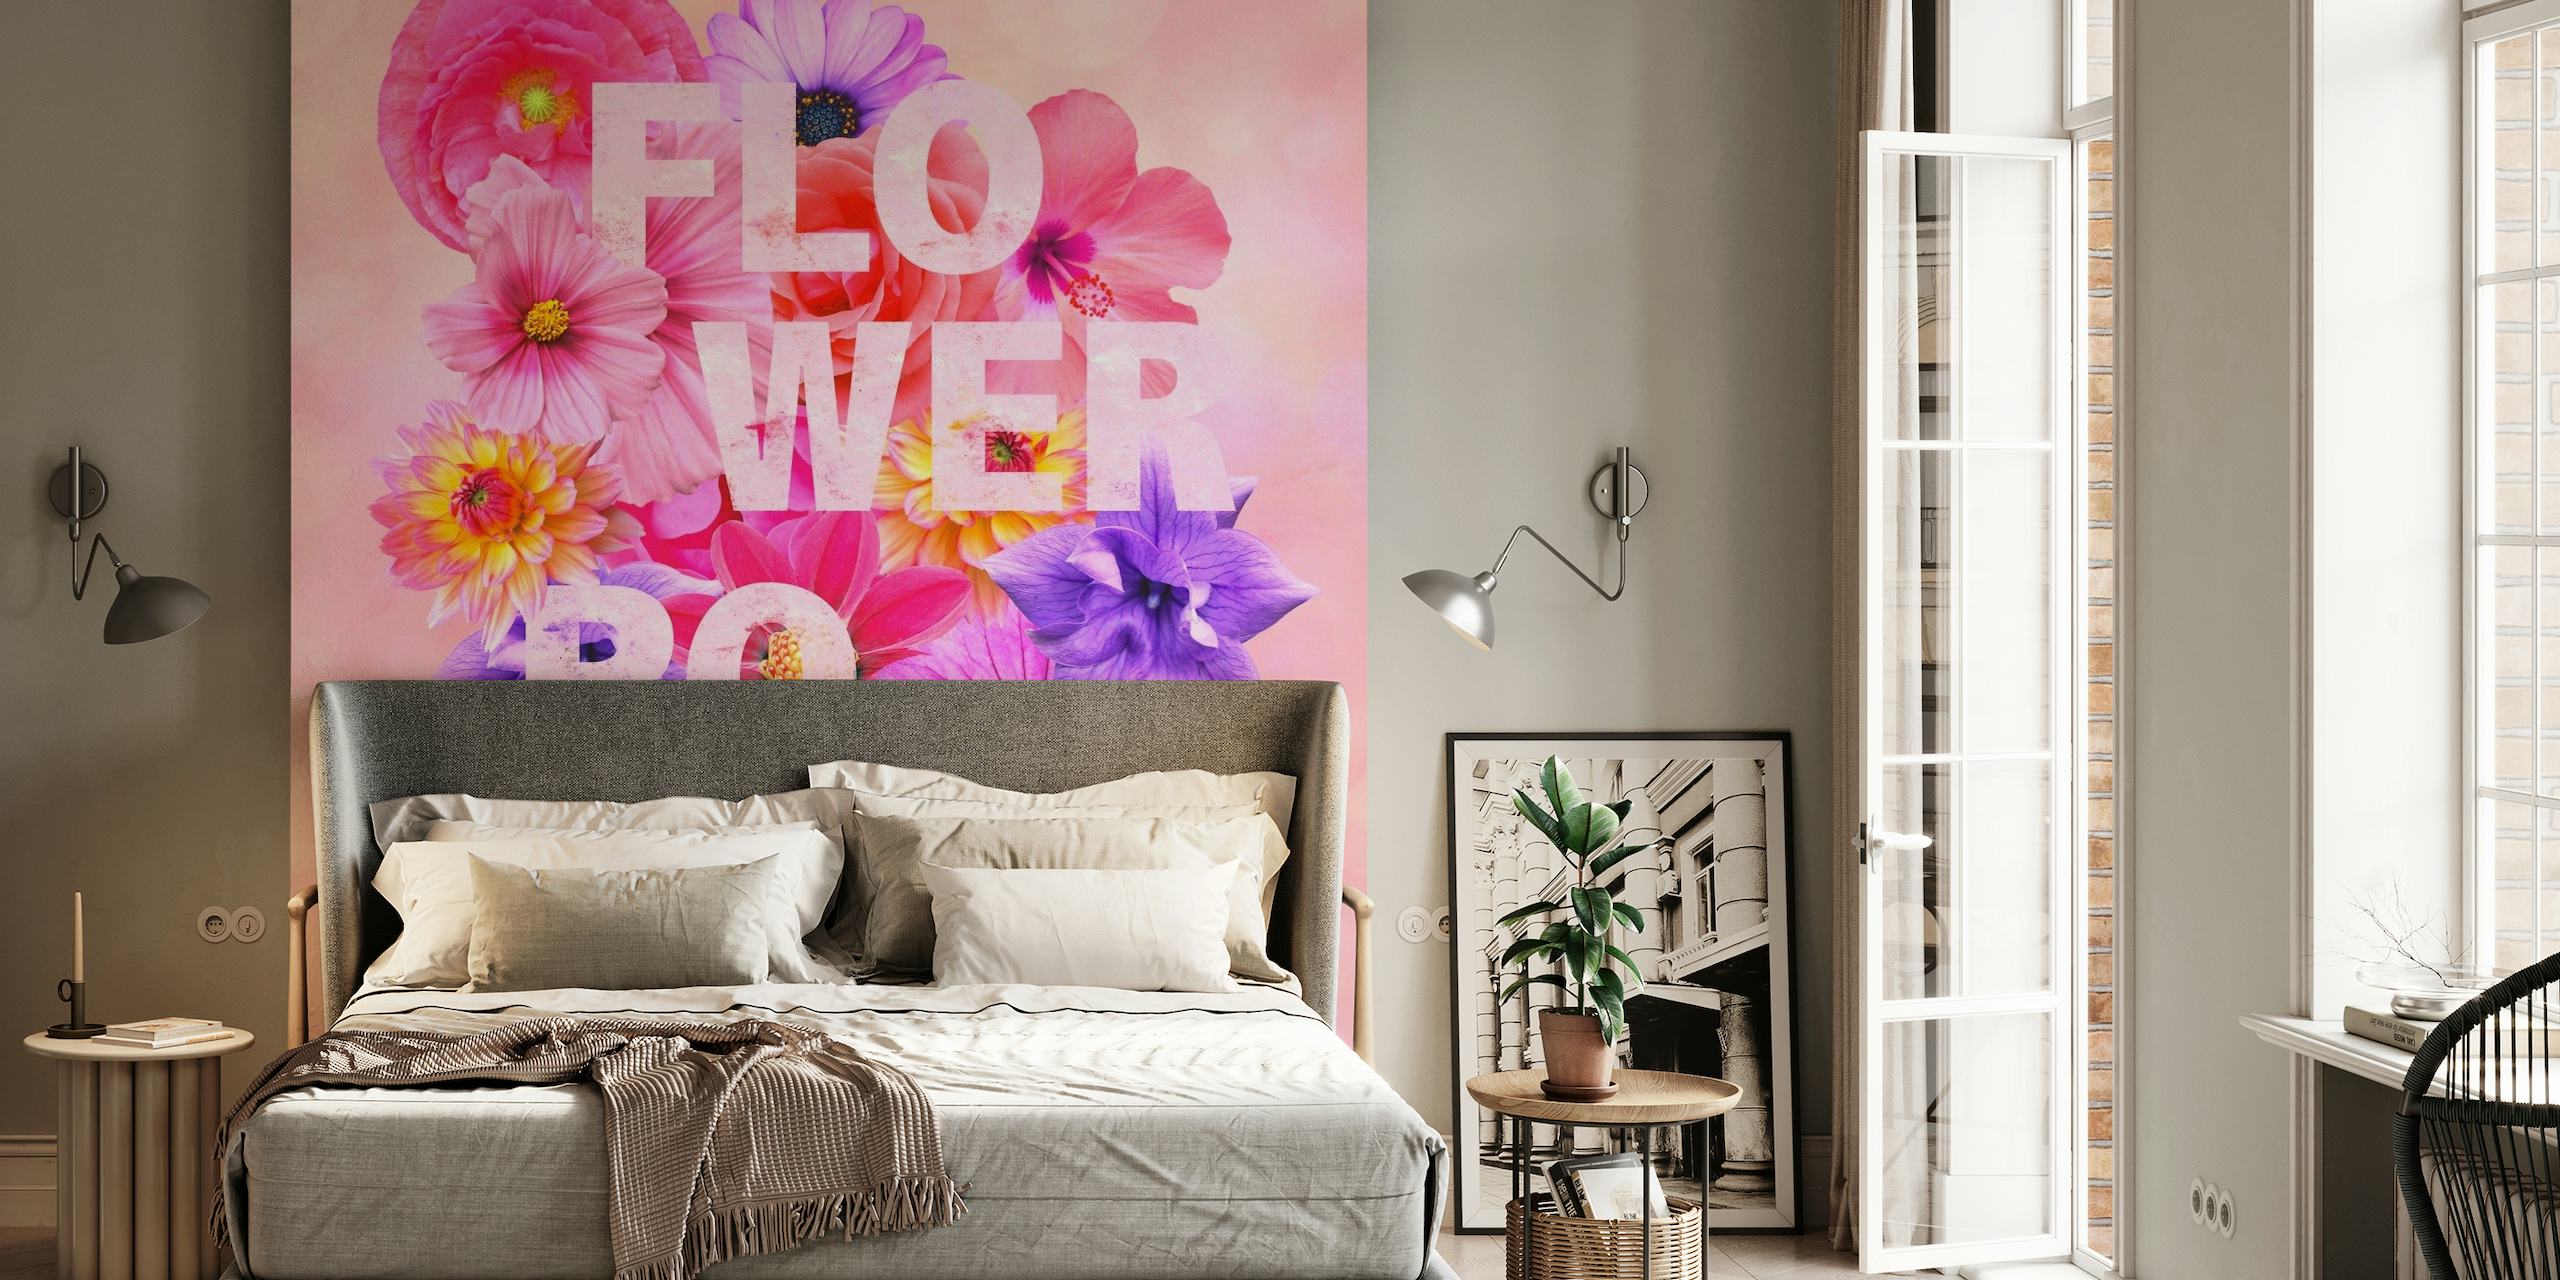 Kolorowa fototapeta z motywem kwiatów i napisem „FLOWER POWER”, emanująca żywą, wiosenną atmosferą